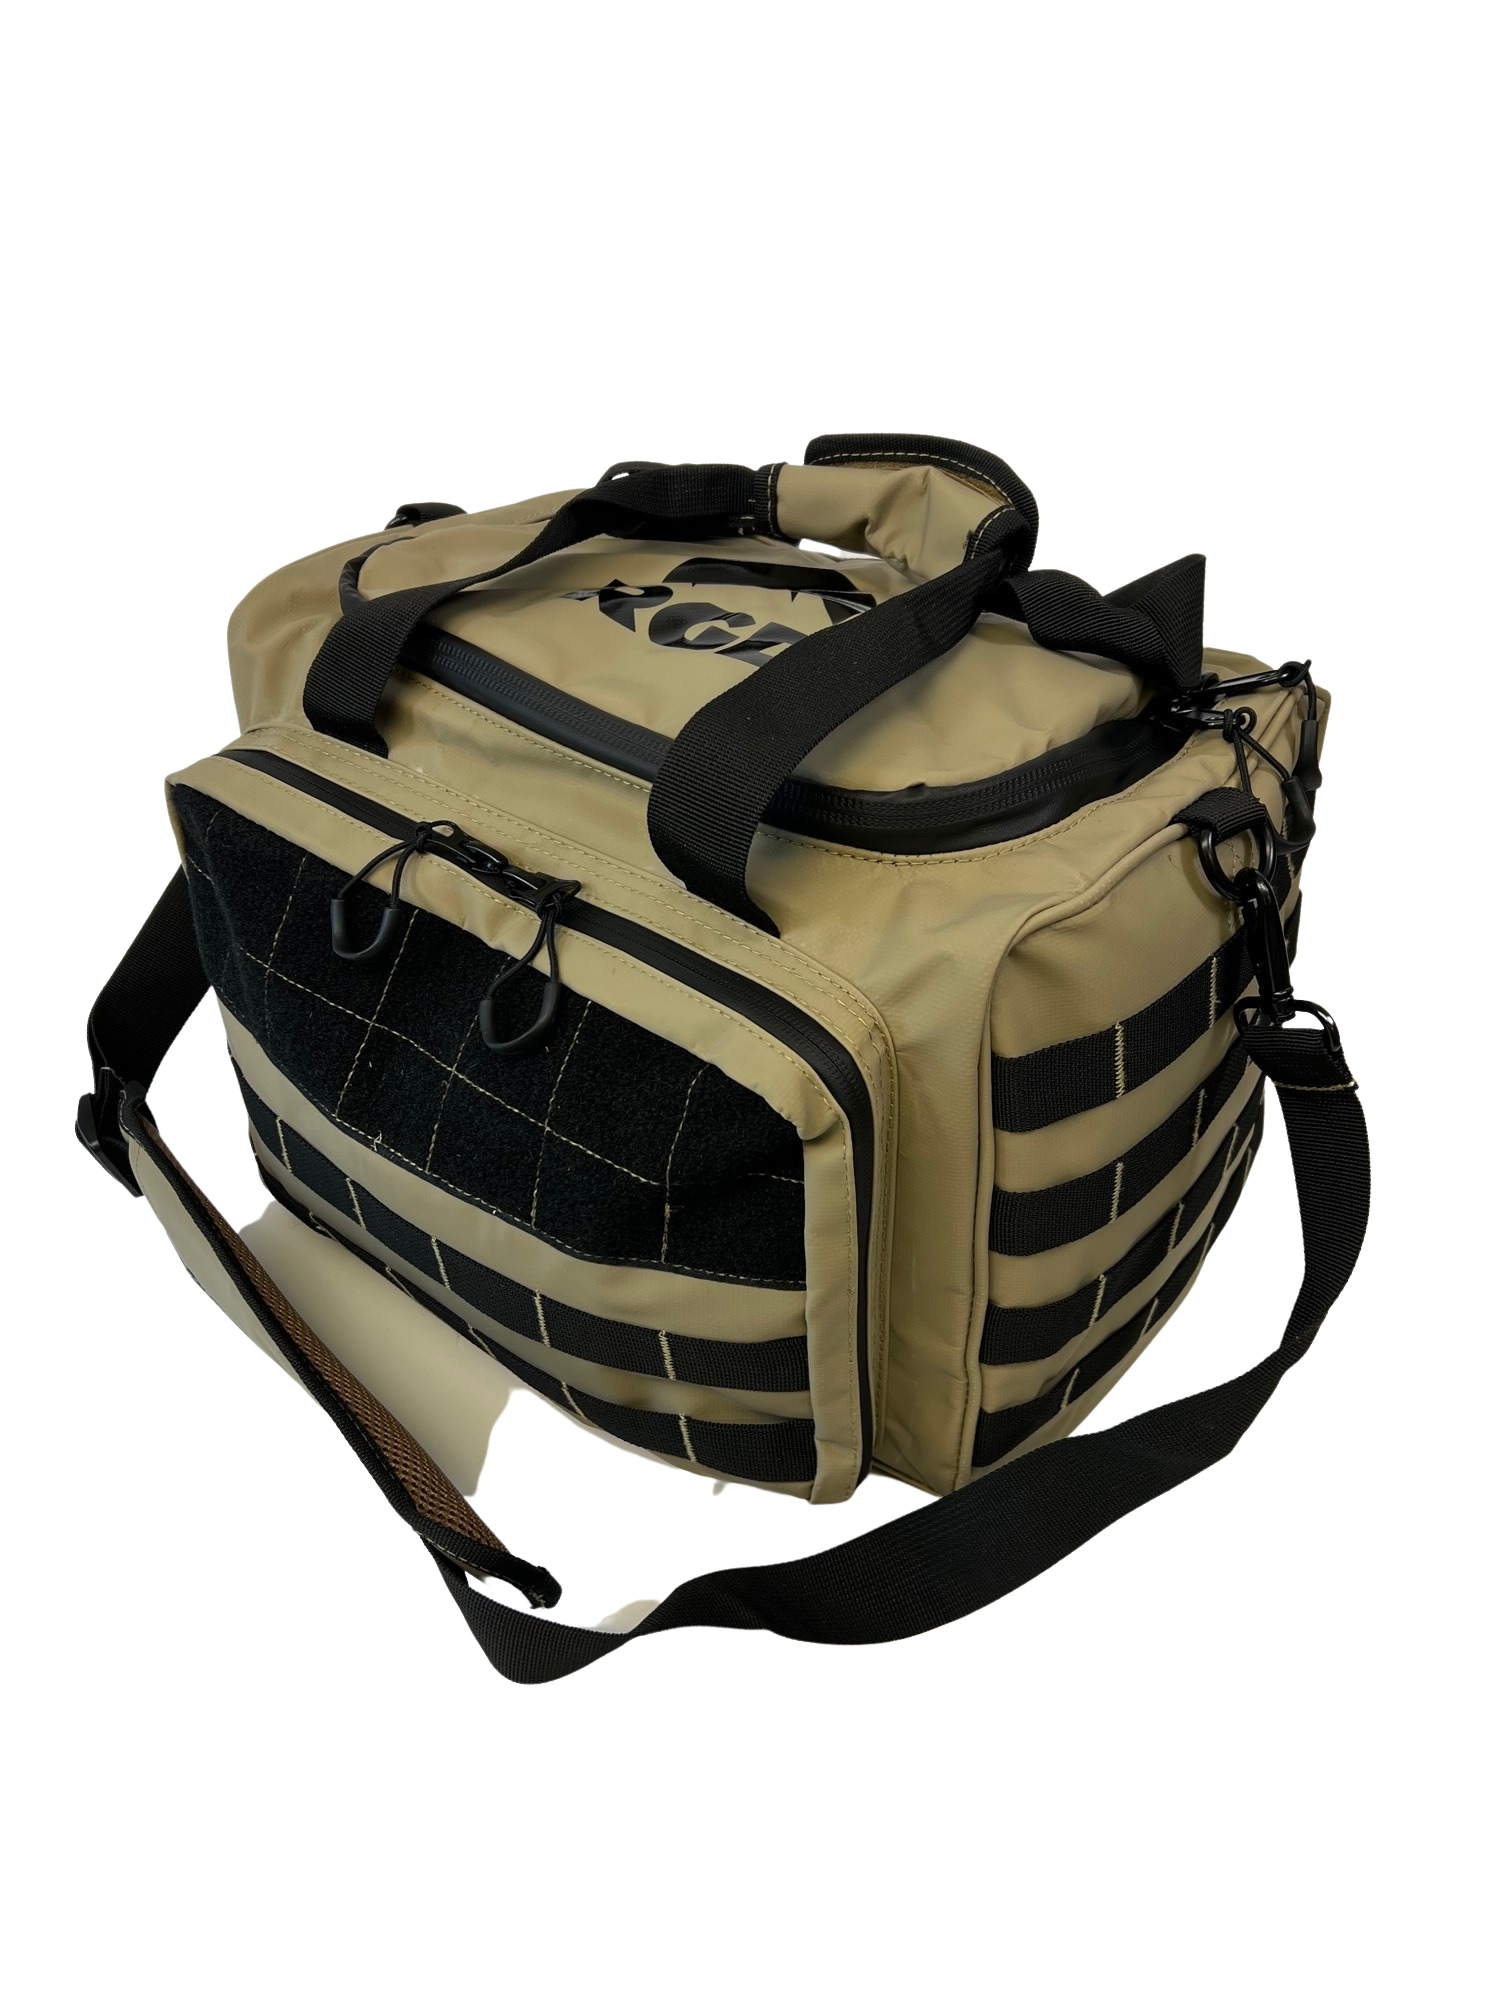 Waterproof Range Bag, Ammo Bag & Blind Bag for Duck Hunting & Shooting –  RUGID